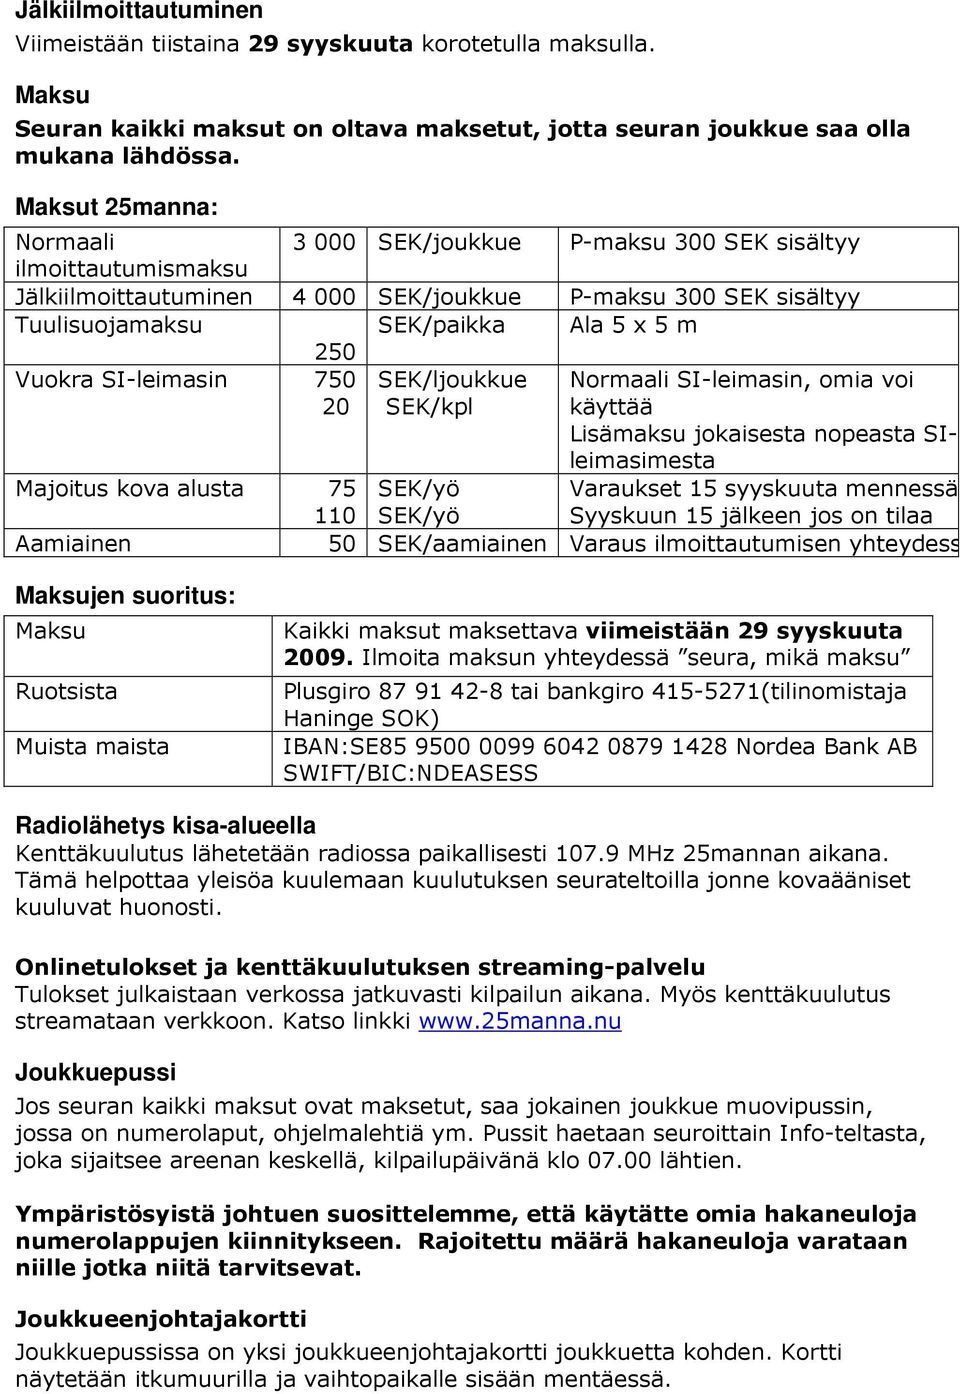 Vuokra SI-leimasin 750 SEK/ljoukkue Normaali SI-leimasin, omia voi 20 SEK/kpl käyttää Lisämaksu jokaisesta nopeasta SIleimasimesta Majoitus kova alusta 75 SEK/yö 110 SEK/yö Varaukset 15 syyskuuta